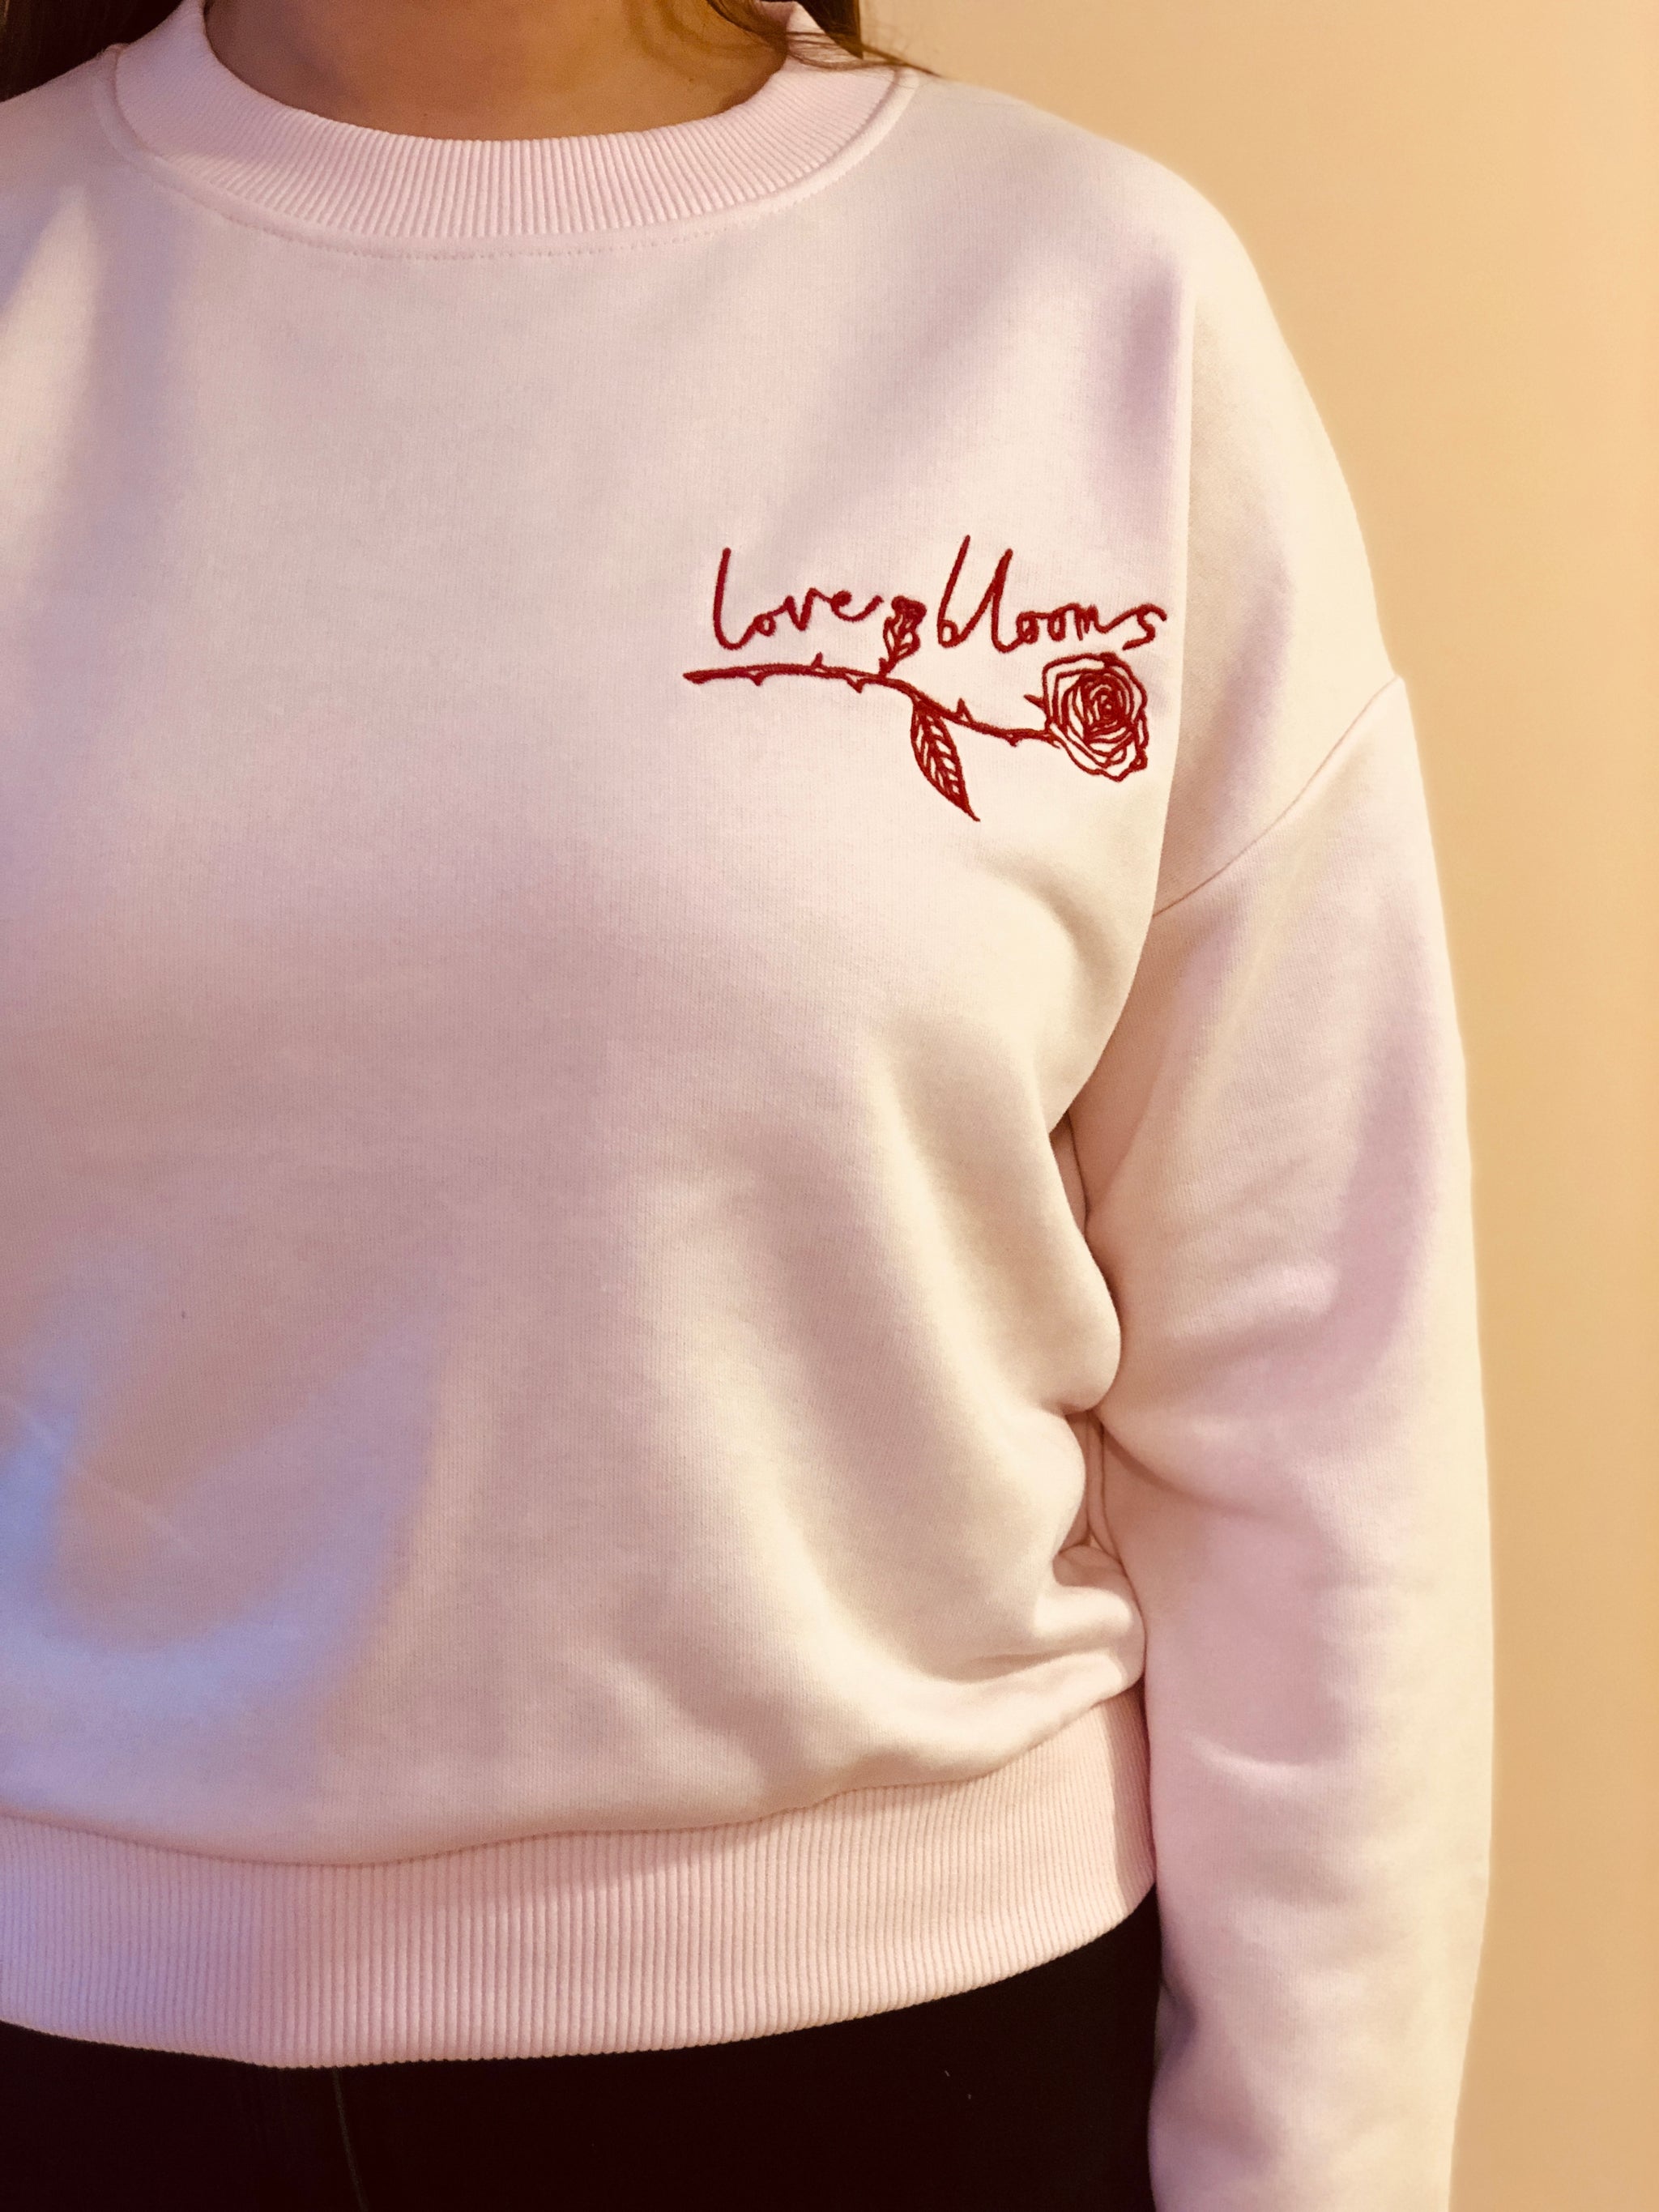 Love Blooms cropped sweatshirt